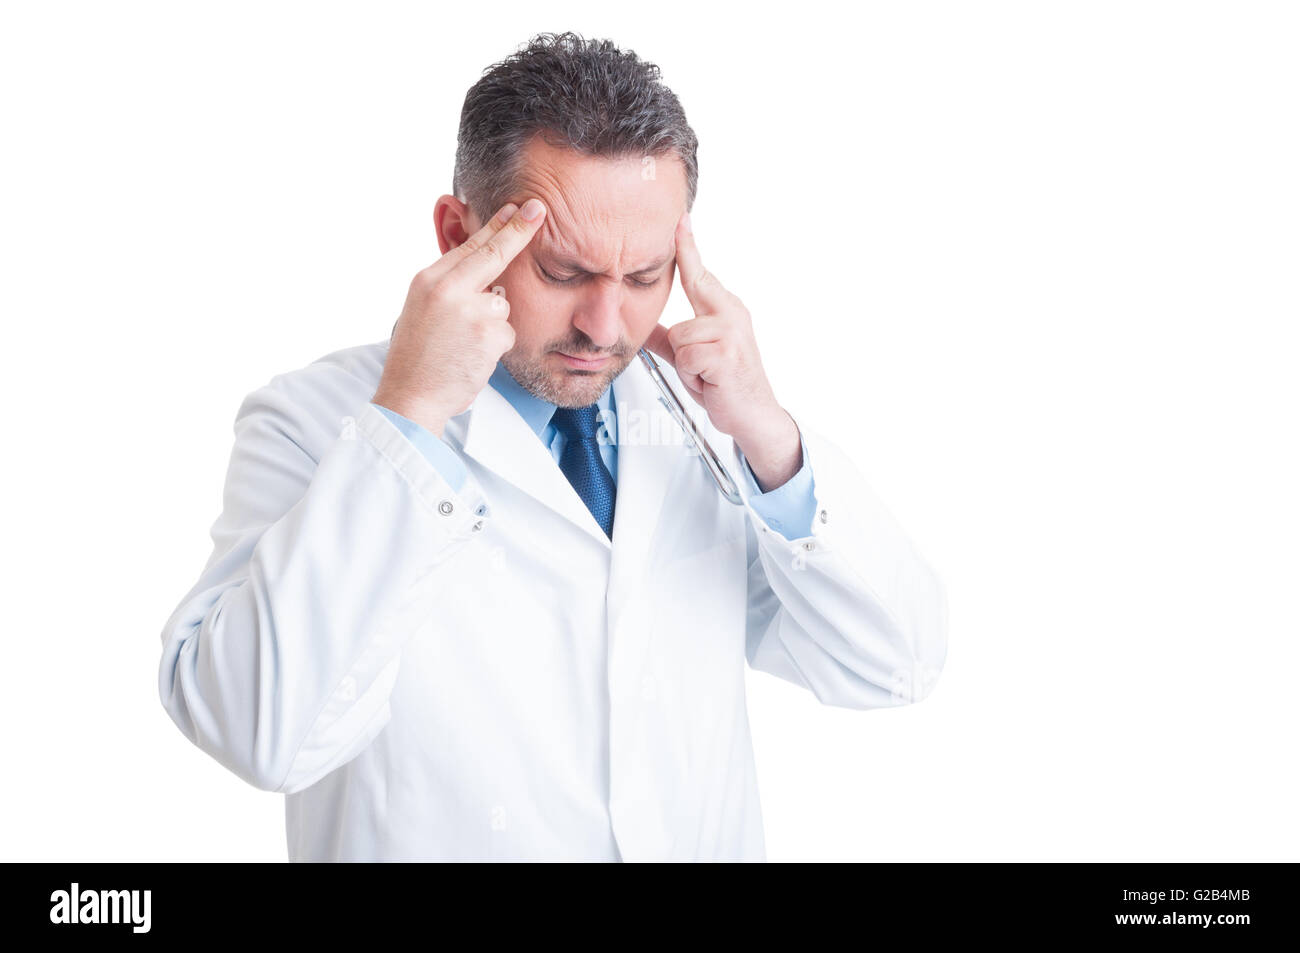 Souligné médecin ou infirmier souffrant d'un mal de tête isolé sur fond blanc Banque D'Images